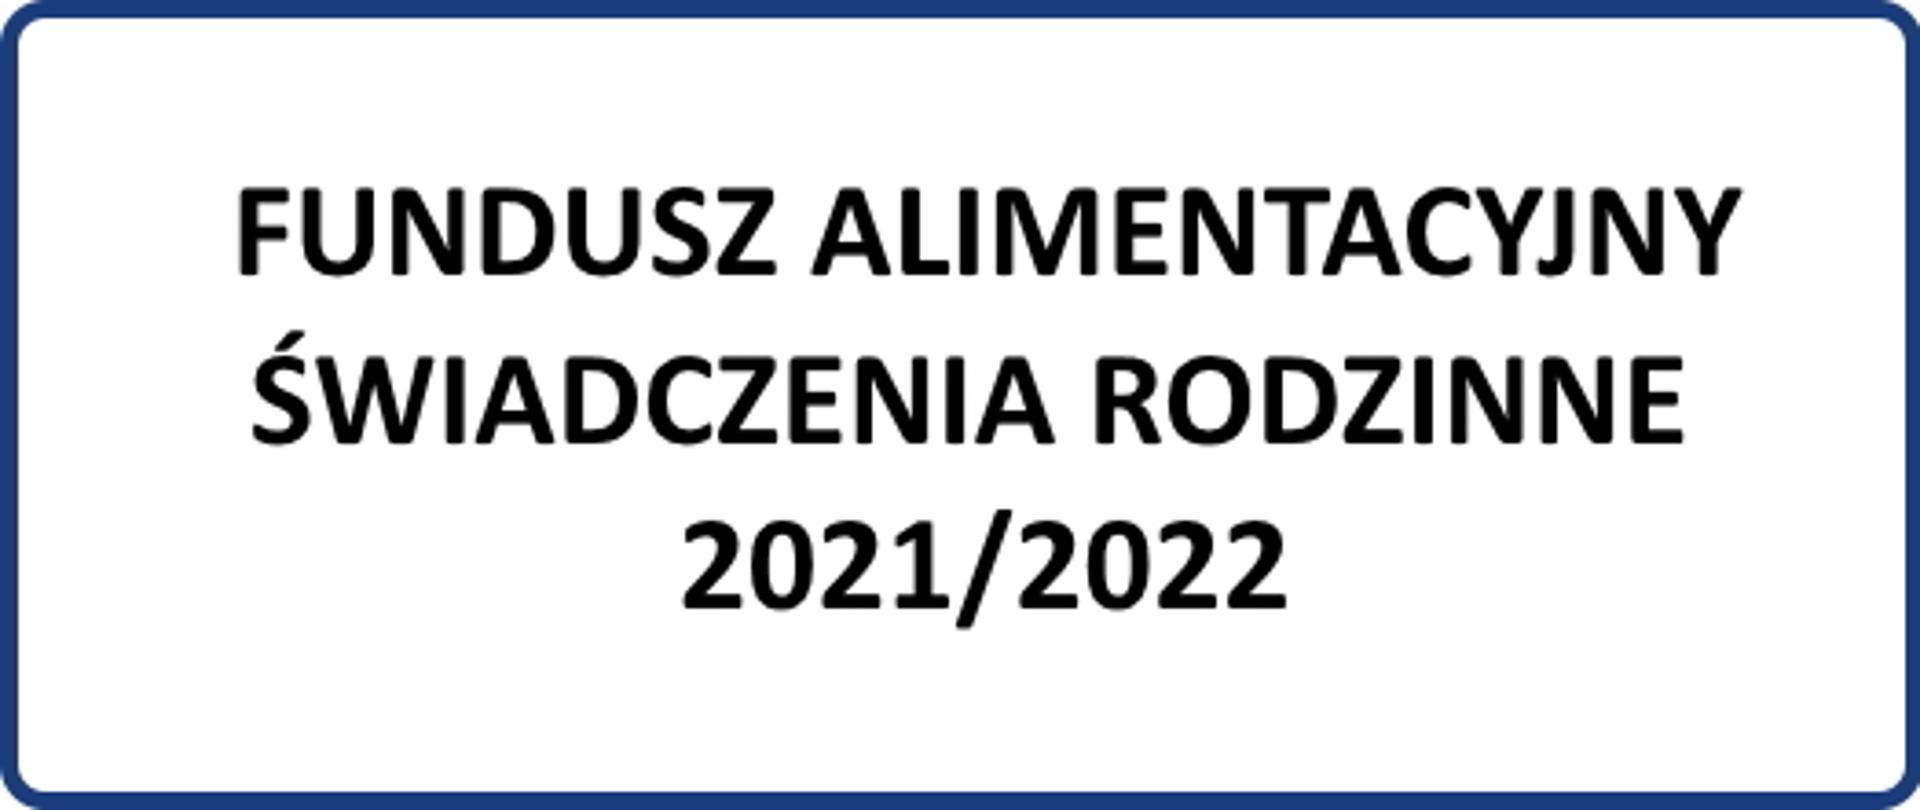 Tekst: Fundusz alimentacyjny, świadczenia rodzinne 2021/2022